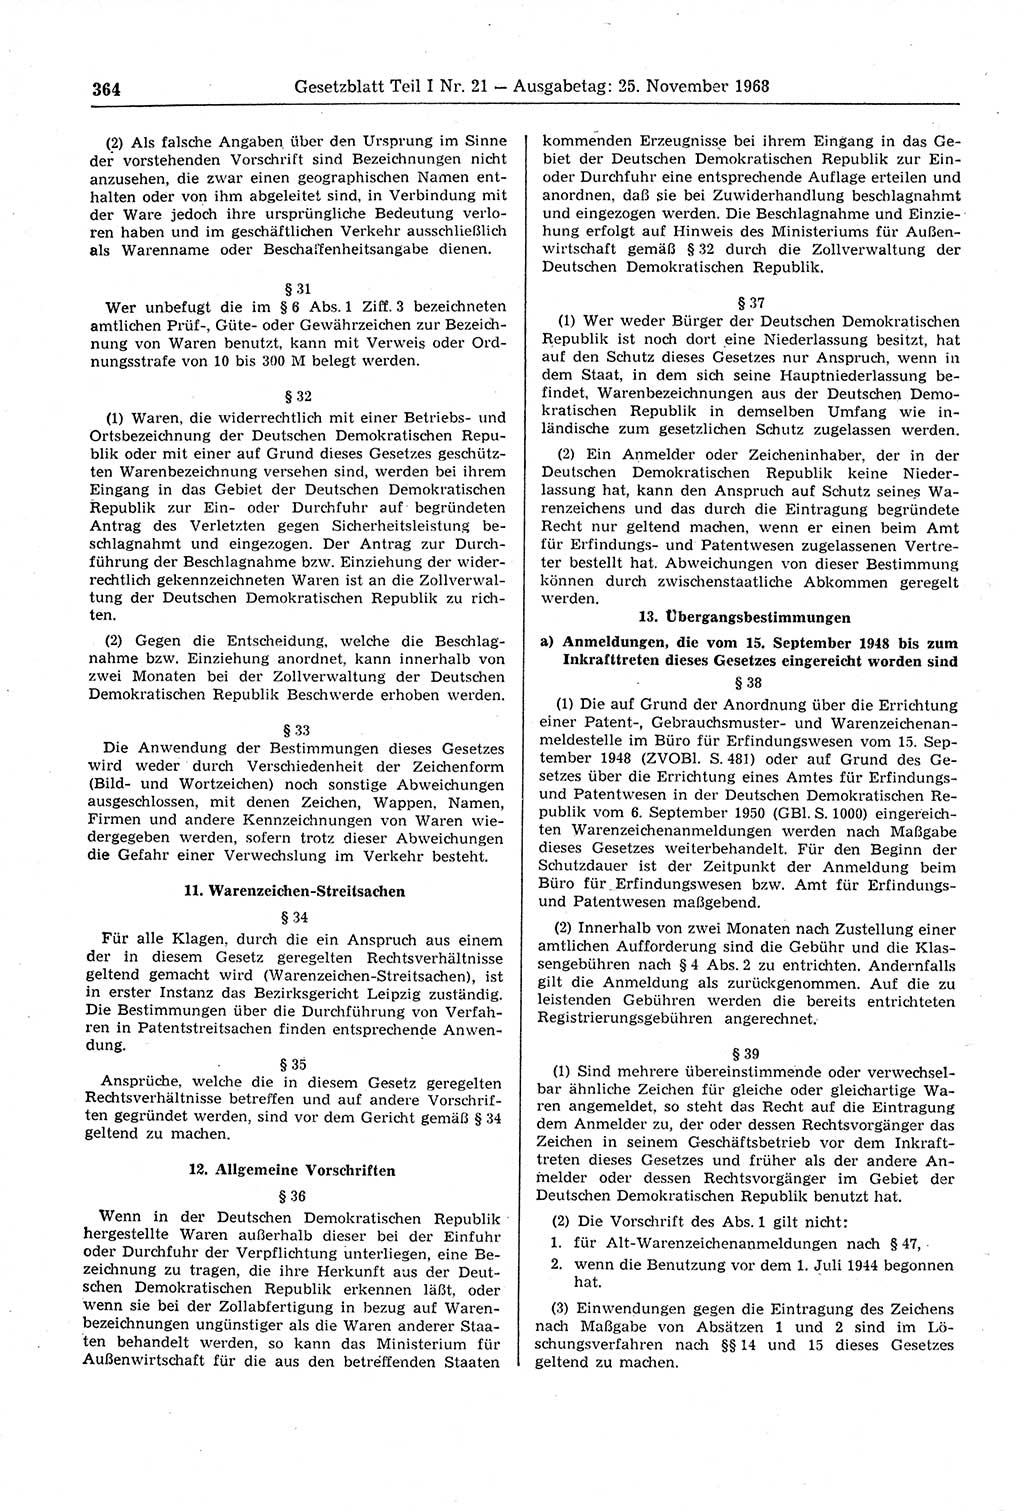 Gesetzblatt (GBl.) der Deutschen Demokratischen Republik (DDR) Teil Ⅰ 1968, Seite 364 (GBl. DDR Ⅰ 1968, S. 364)